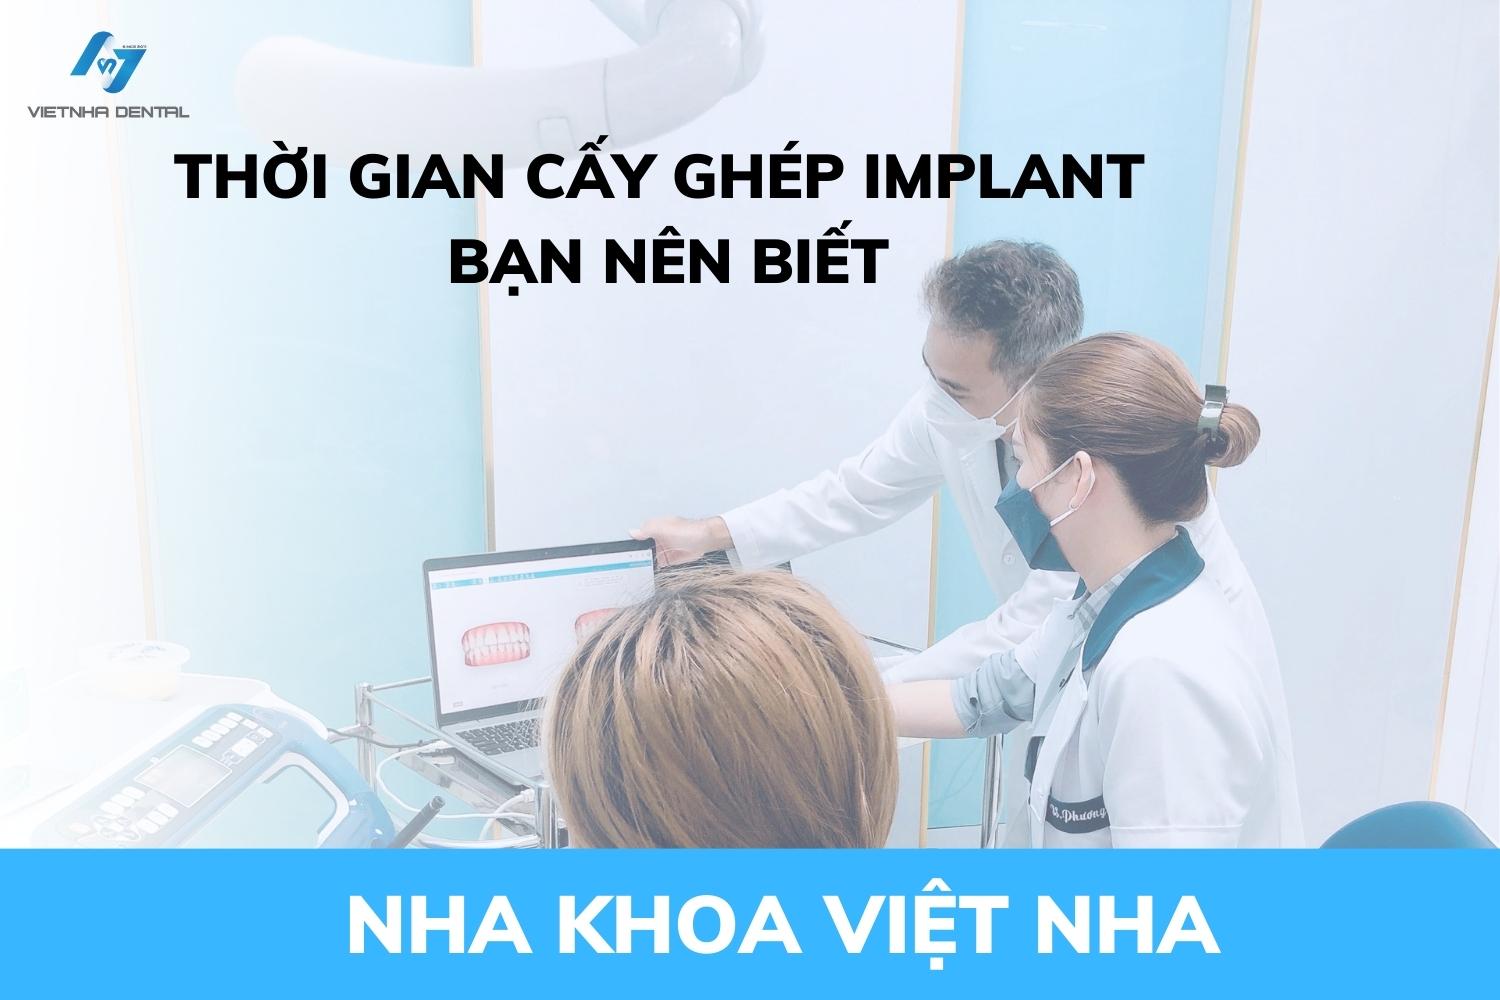 Thời Gian Cấy Ghép Implant Mất Khoảng Bao Lâu? Nha Khoa Việt Nha